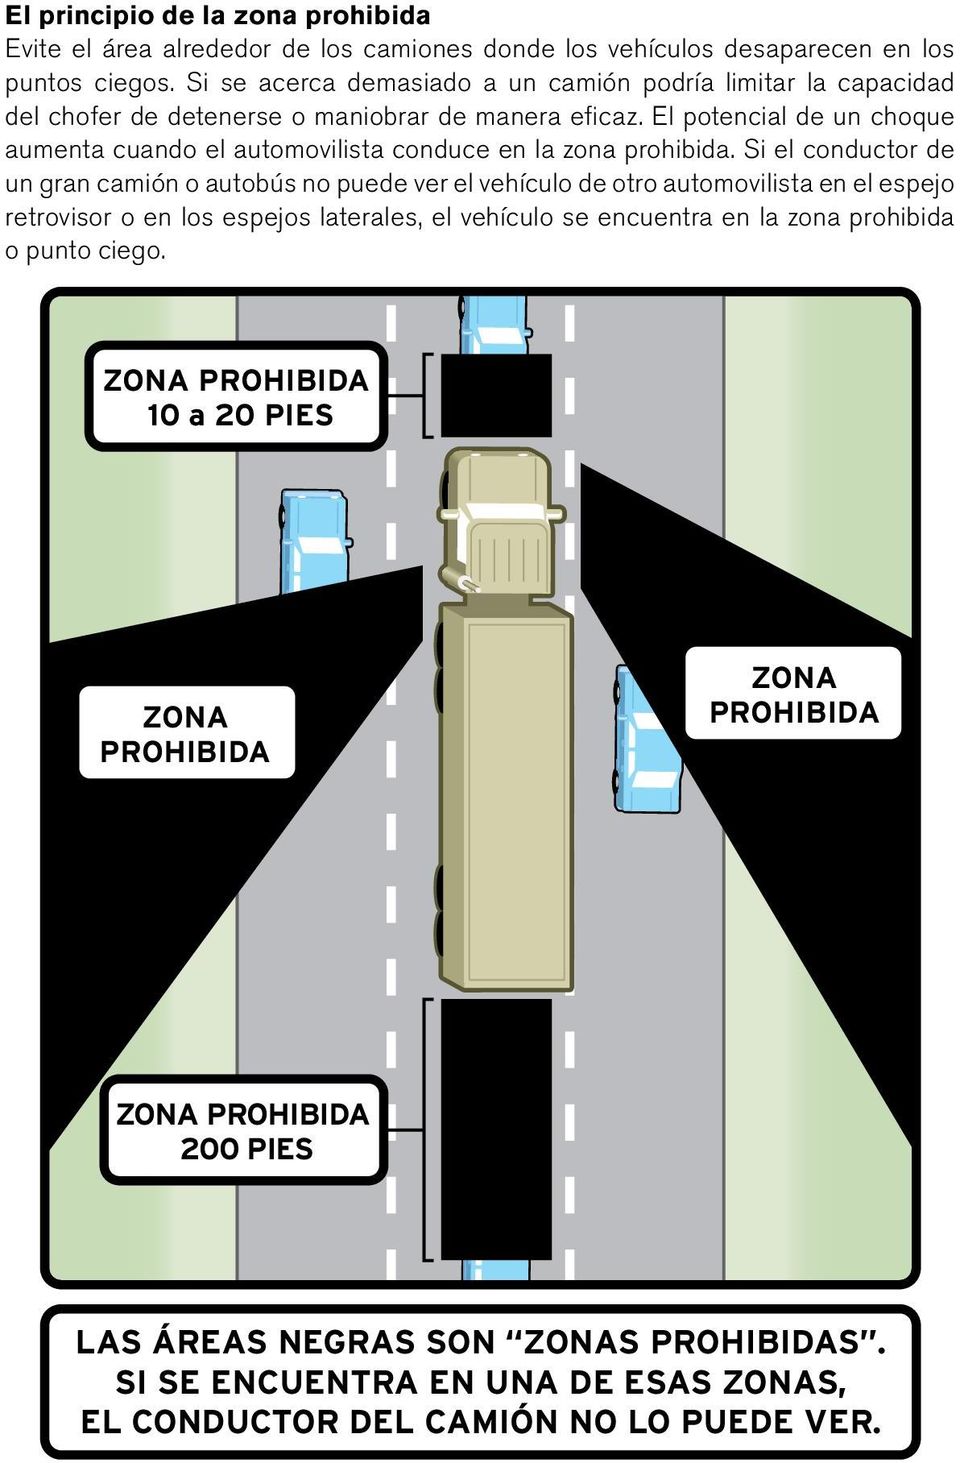 El potencial de un choque aumenta cuando el automovilista conduce en la zona prohibida.